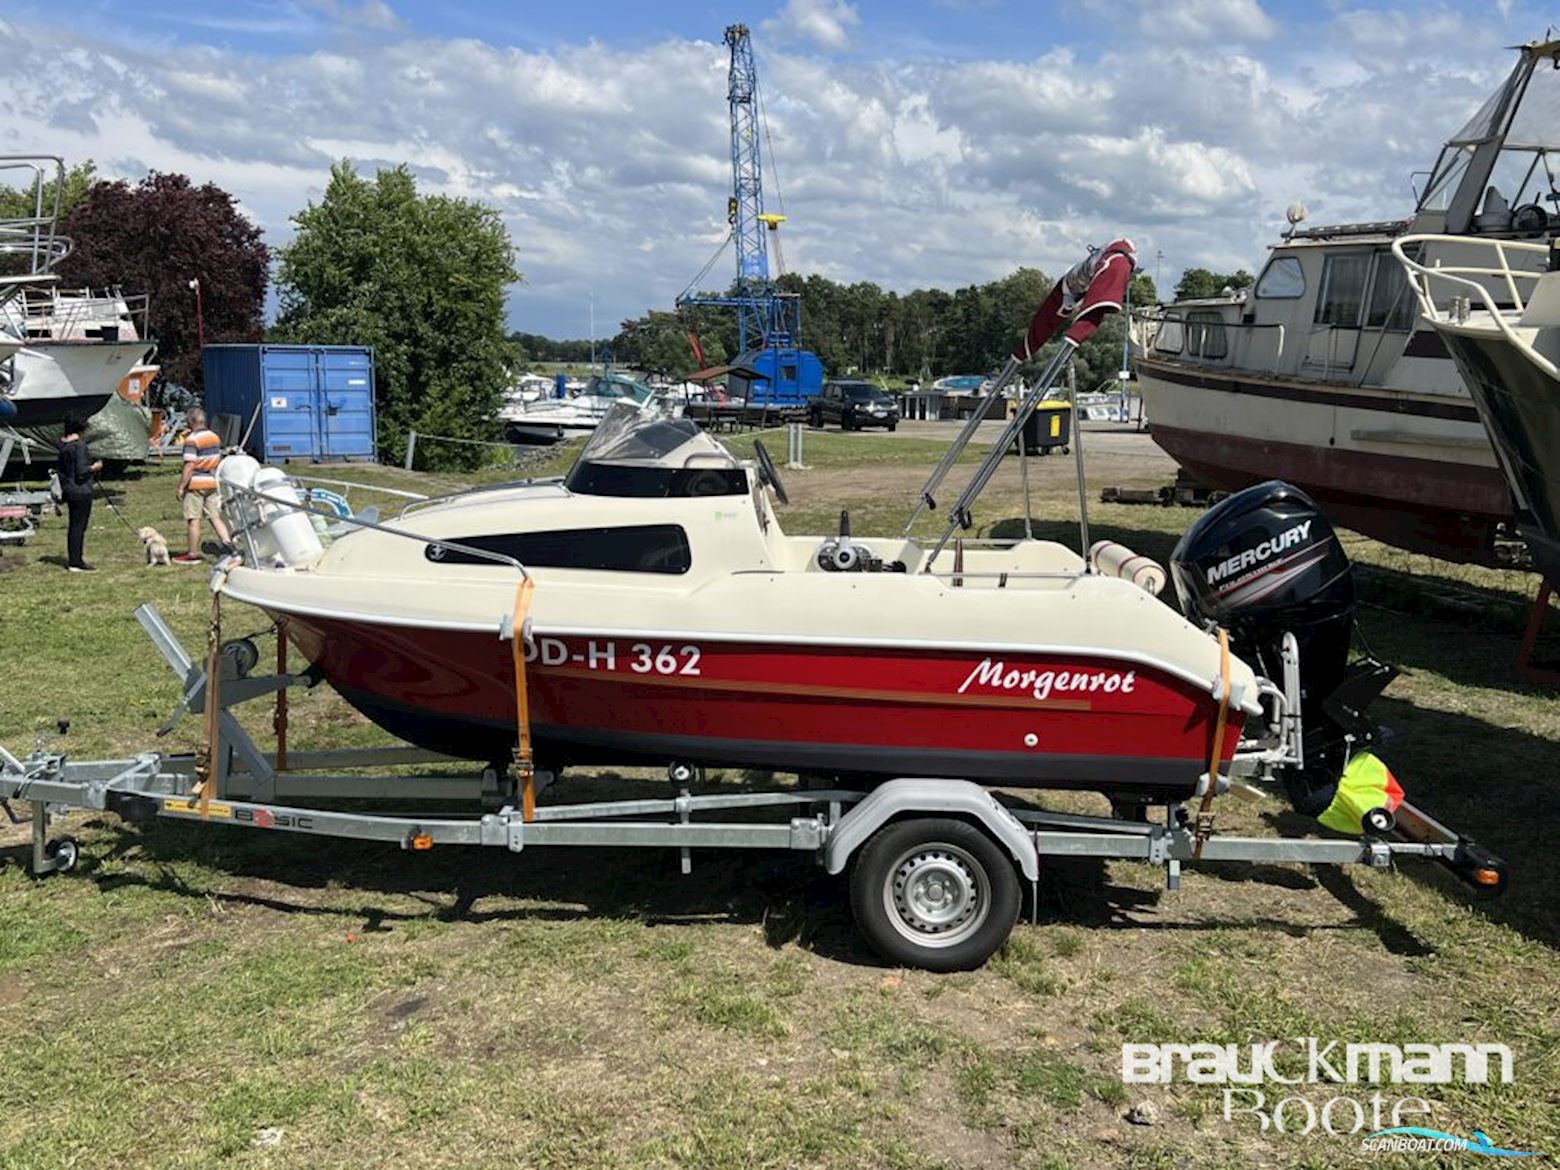 Mystraly 430 Cabin Motorbåt 2018, med Mercury Marine motor, Tyskland